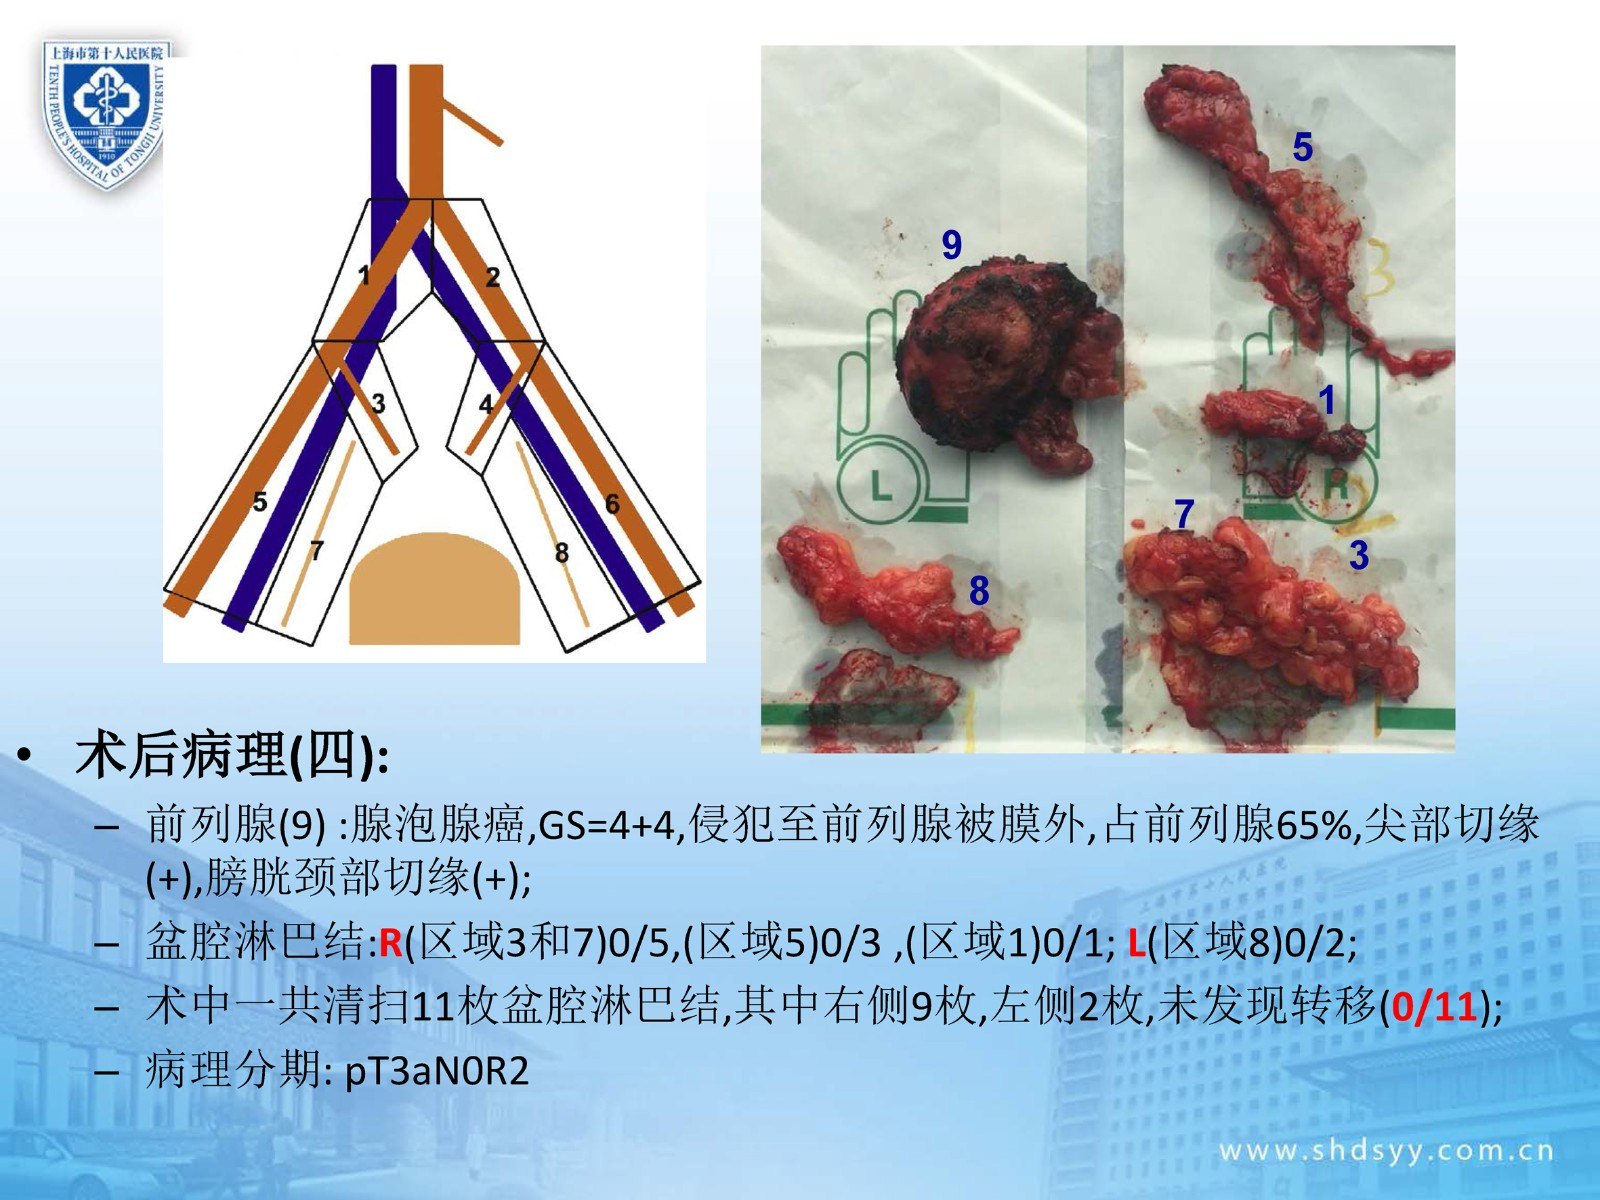 北京大学白凡课题组揭示结直肠癌近端淋巴结与远端器官的转移路径